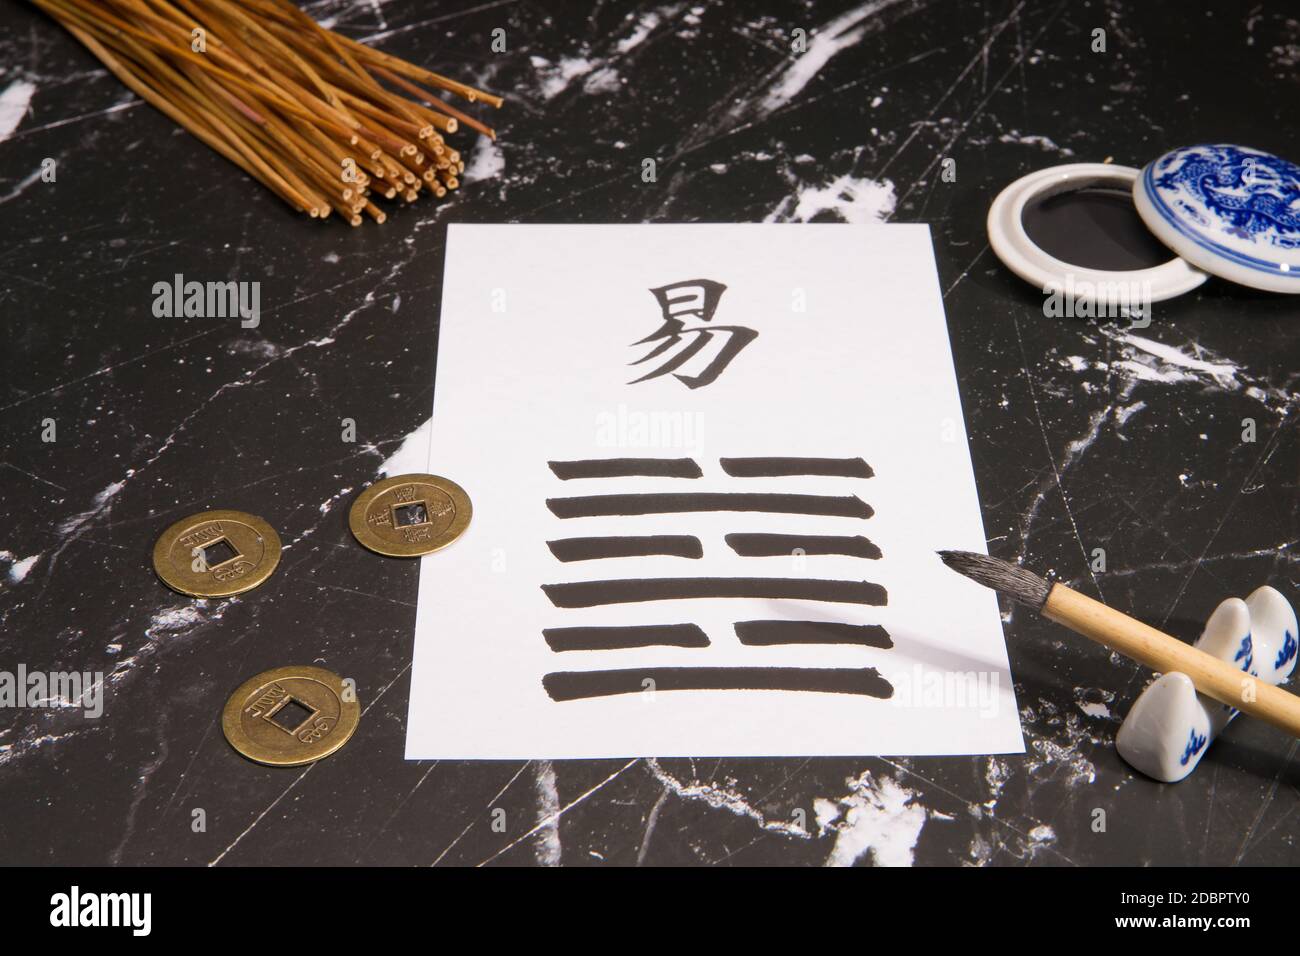 Primo piano di un accordo di i Ching con il 63esimo esagramma (dopo la complicazione / Chi Chi) scritto con un pennello di inchiostro cinese su carta di riso. Ci sono anche Foto Stock